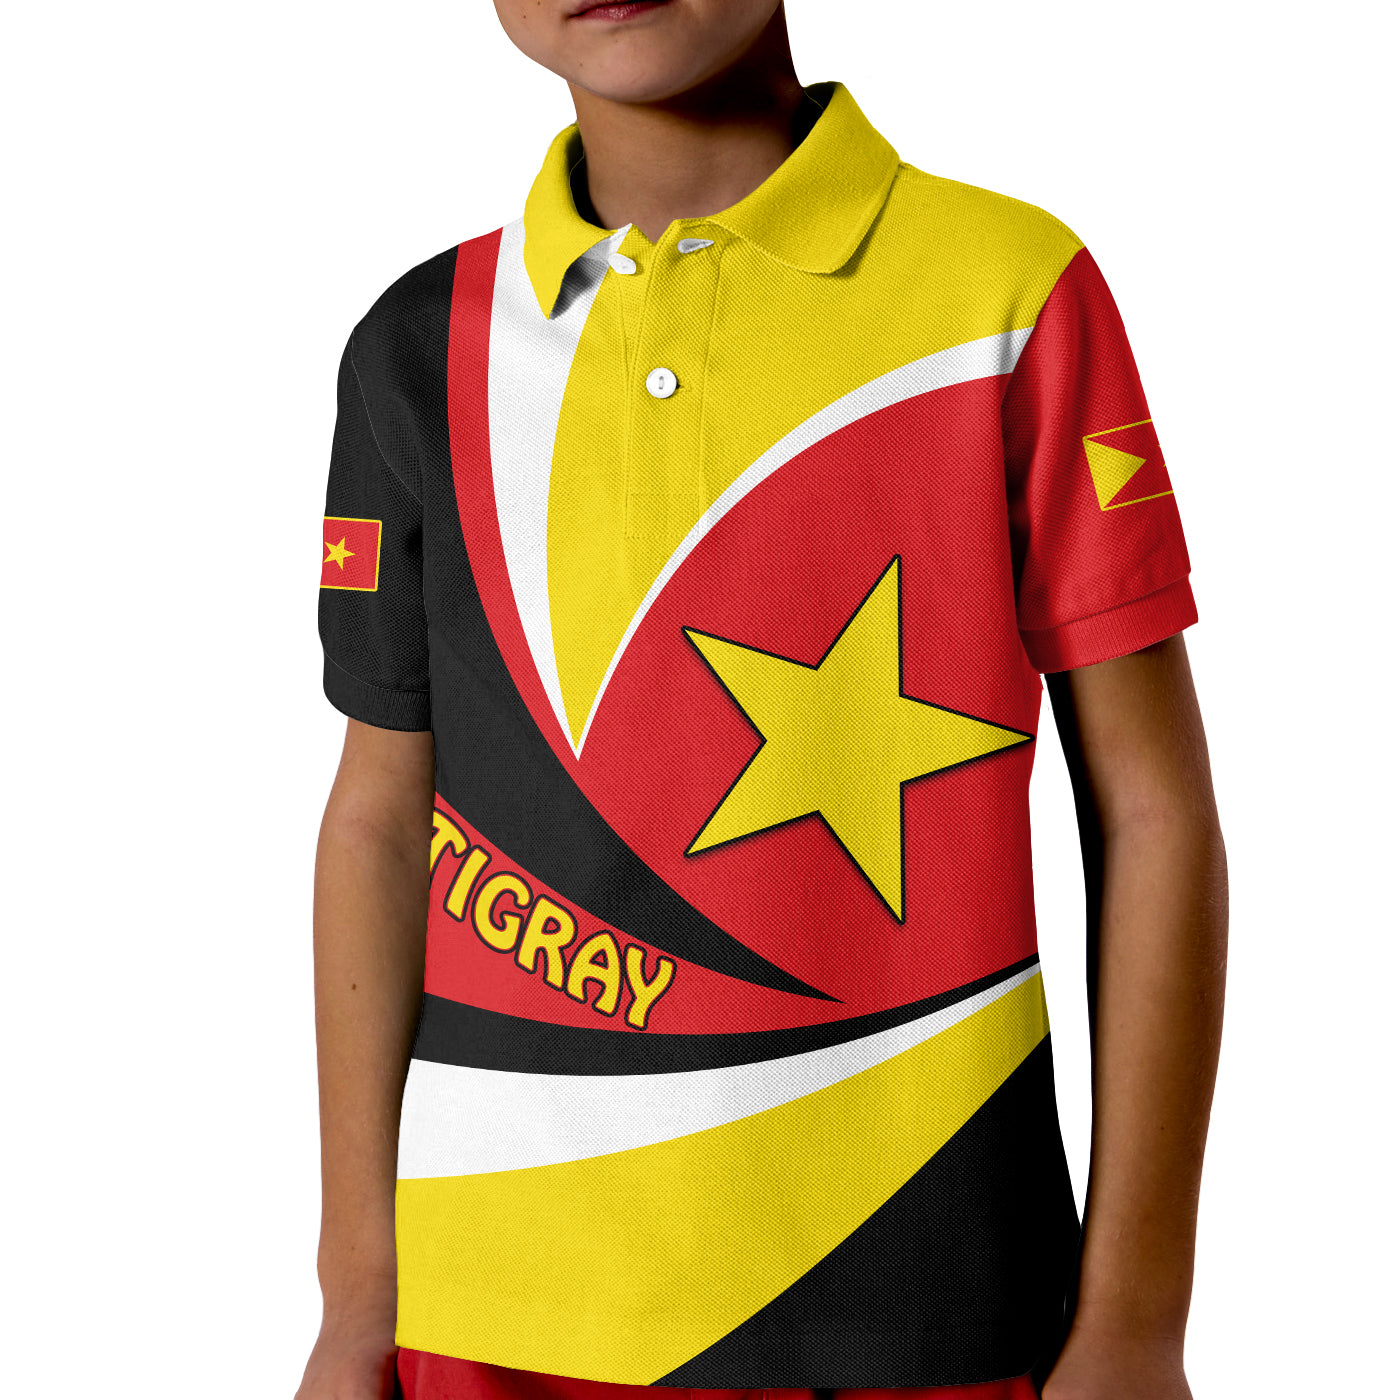 tigray-polo-shirt-kid-style-color-flag